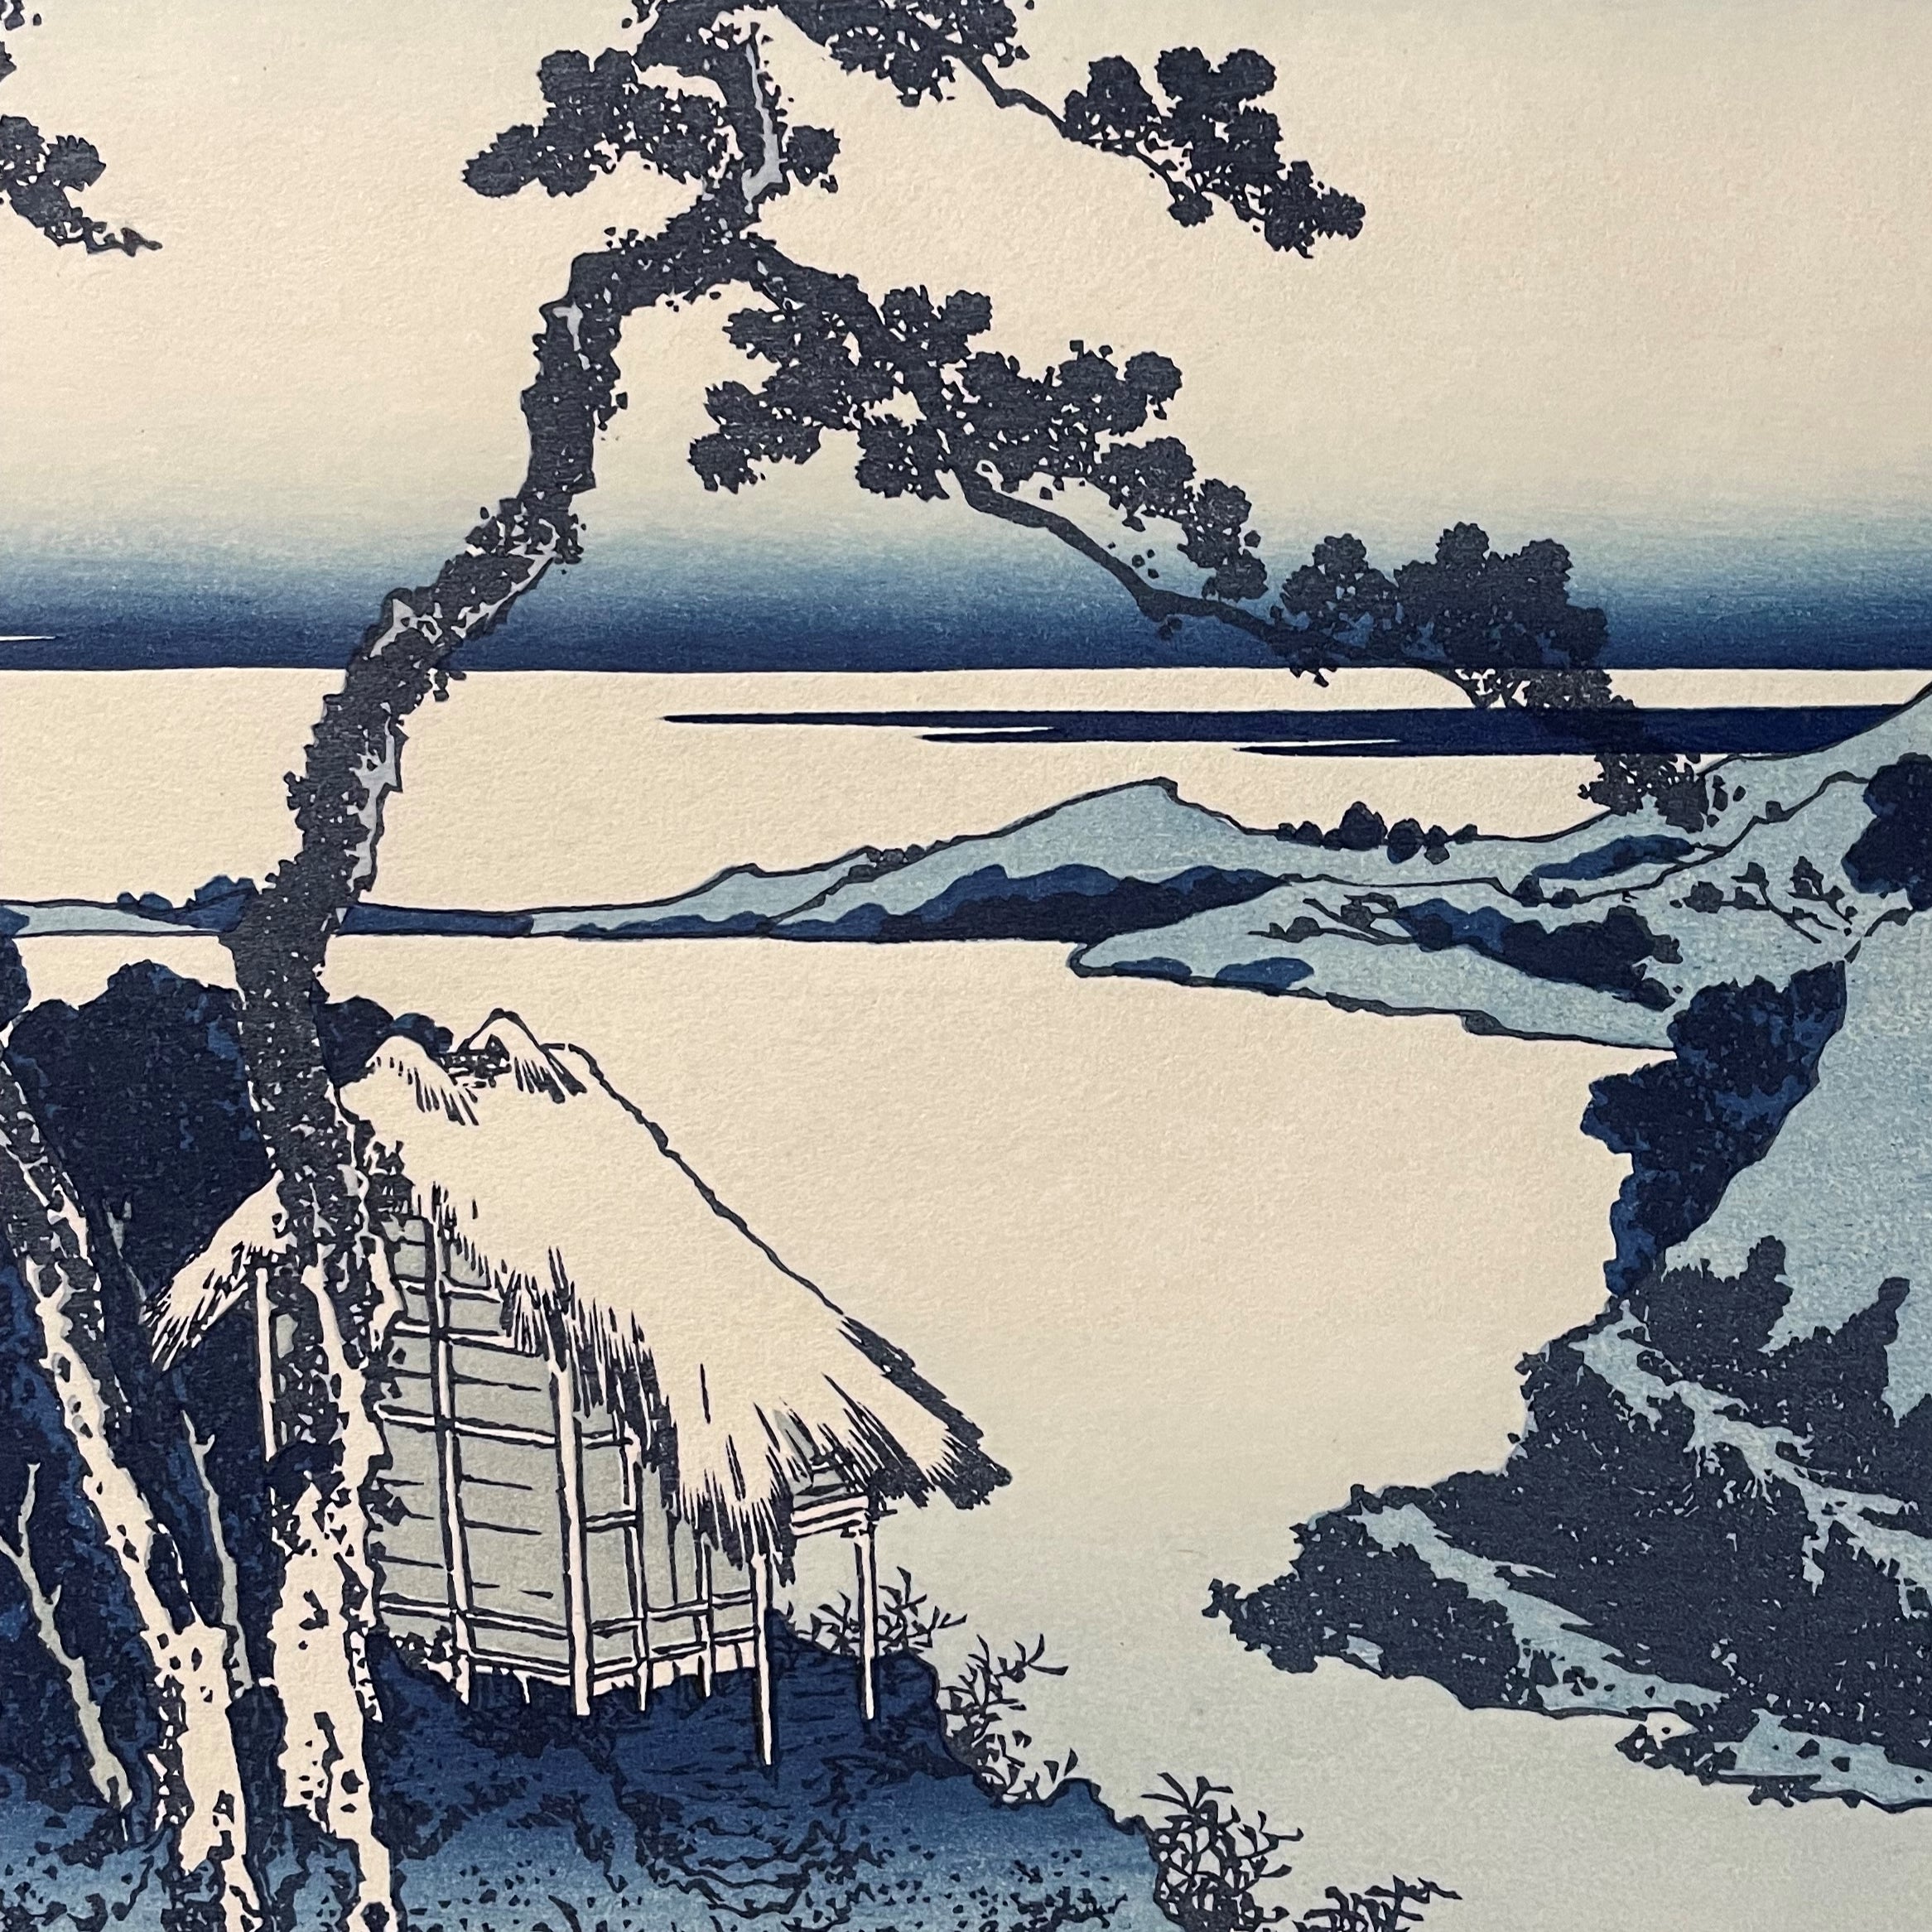 Lake Suwa in Shinano Province (Woodblock Print)